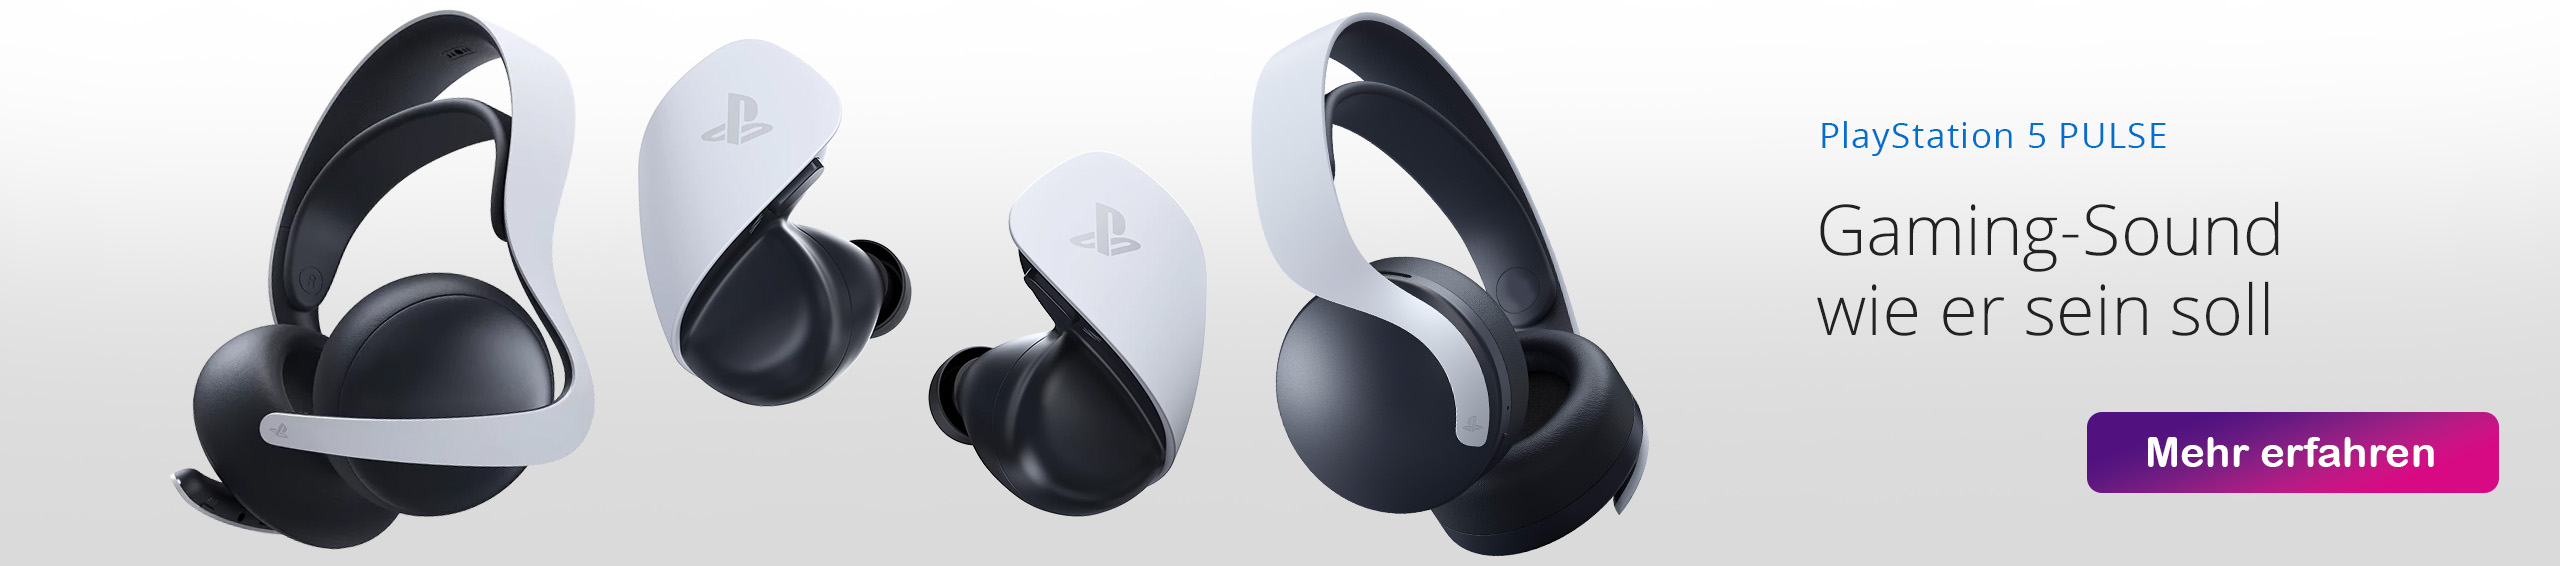 PlayStation PULSE Headsets und Explore f�r die PlayStation 5 Konsole bei GameStop kaufen